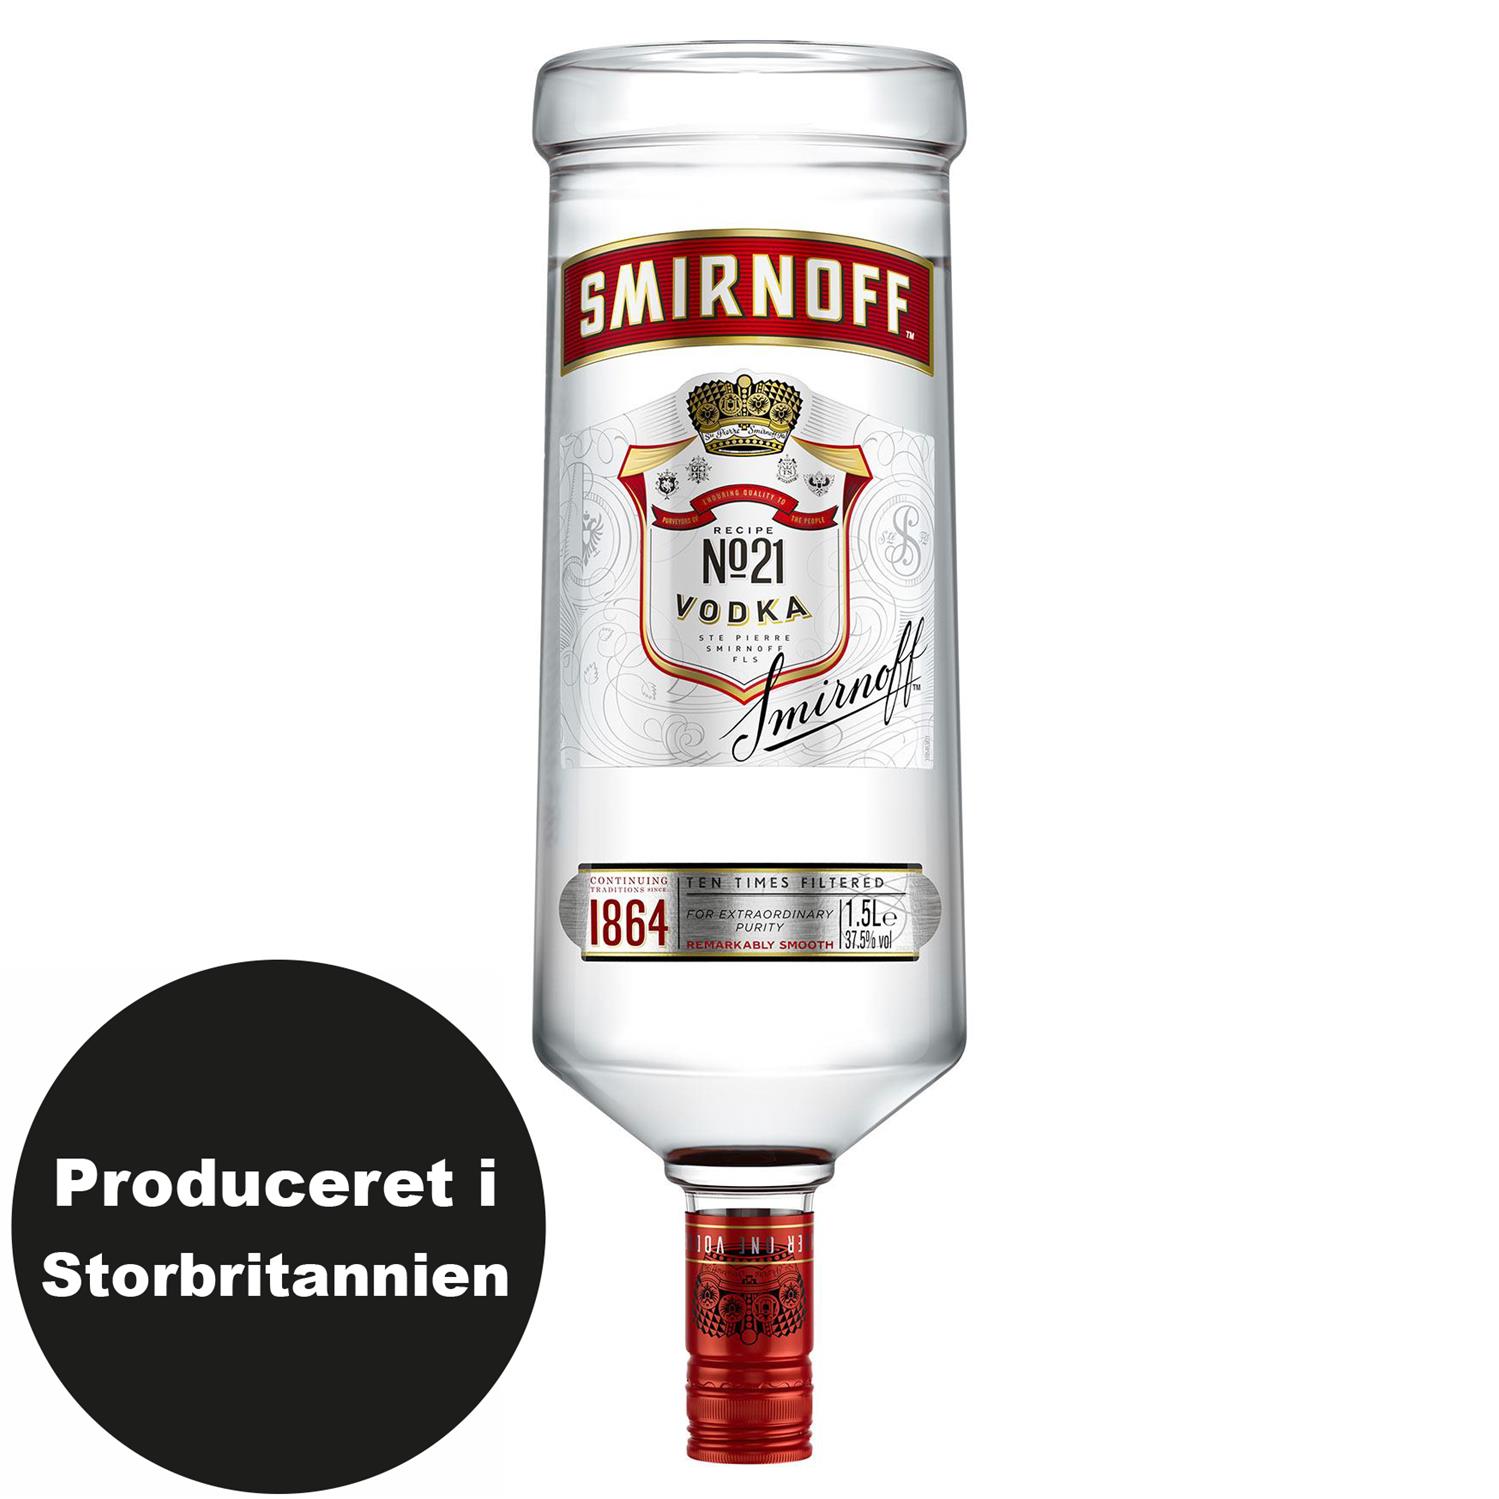 tykkelse nyt år ideologi Smirnoff Magnumflaske 37,5% 1,5 l. - Grænsehandel til billige priser